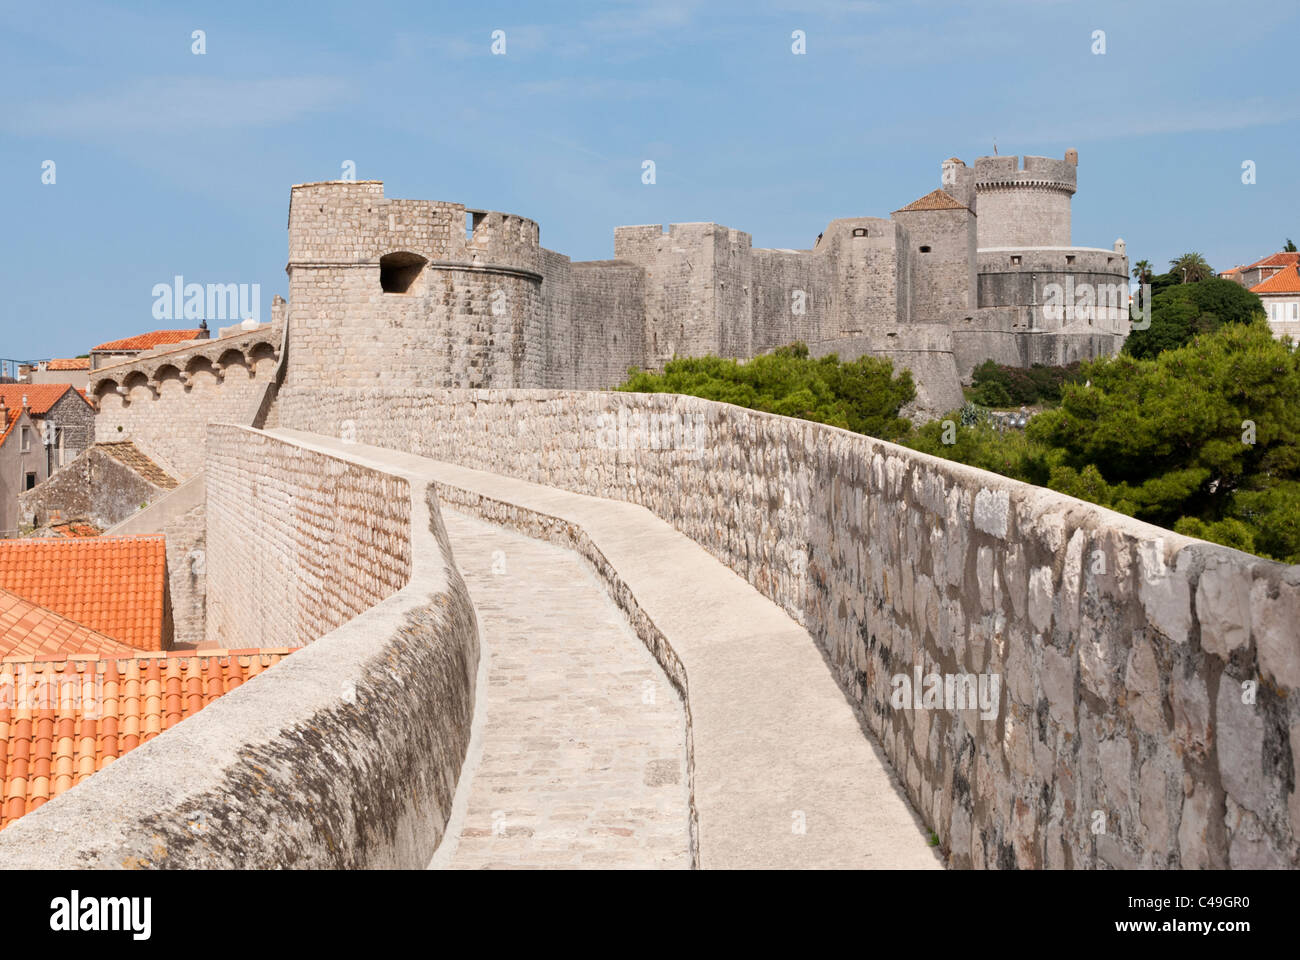 Une vue sur les murs de la ville qui entourent la vieille ville historique de la ville de Dubronik sur Croatias côte Adriatique. Banque D'Images